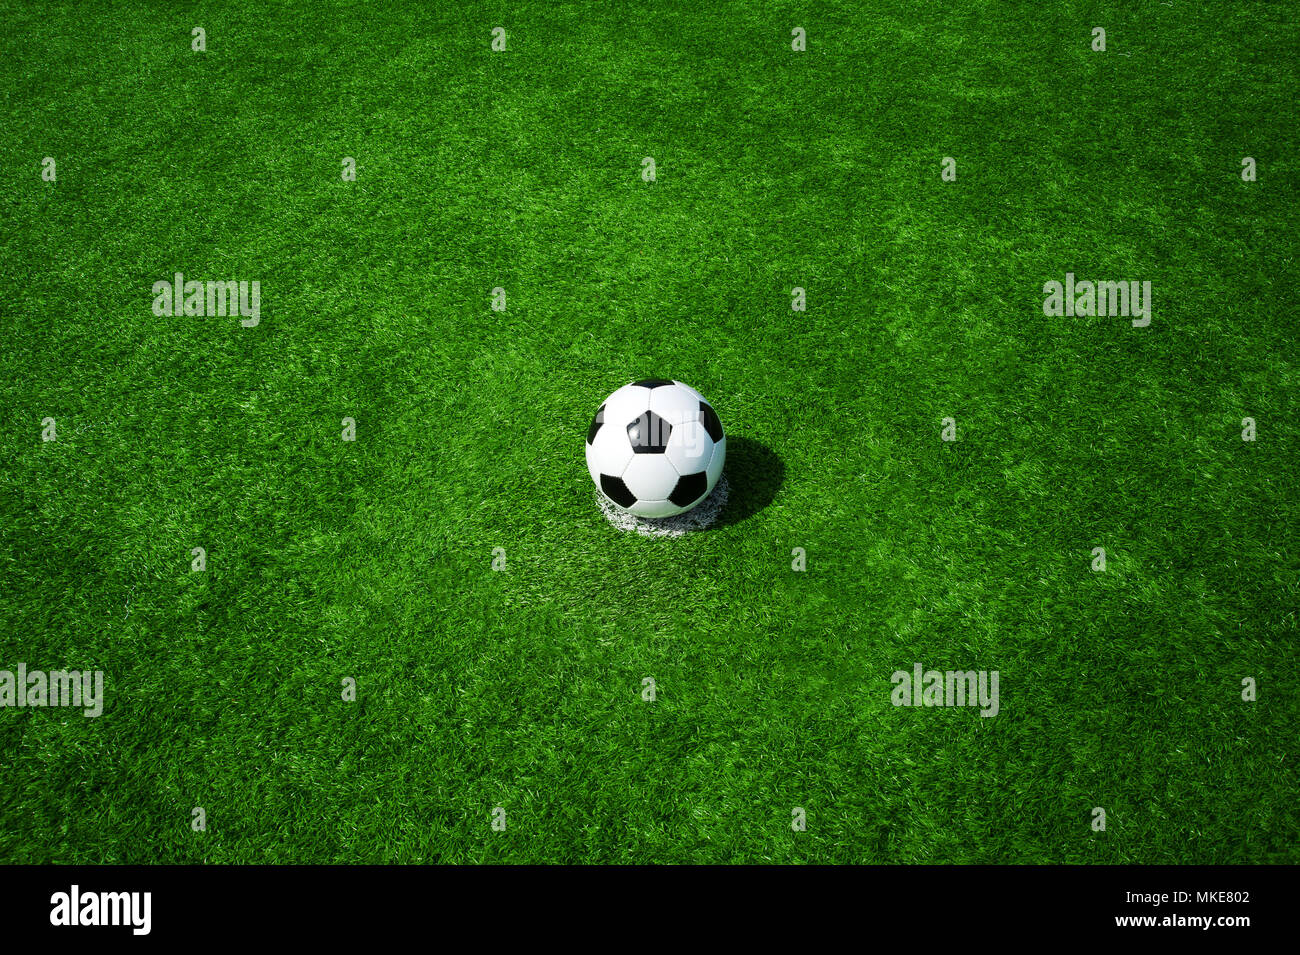 Pallone da calcio classico bianco e nero sulla pena di macchia verde erba artificiale, il calcio con un sacco di spazio attorno per testo, per un invito Foto Stock